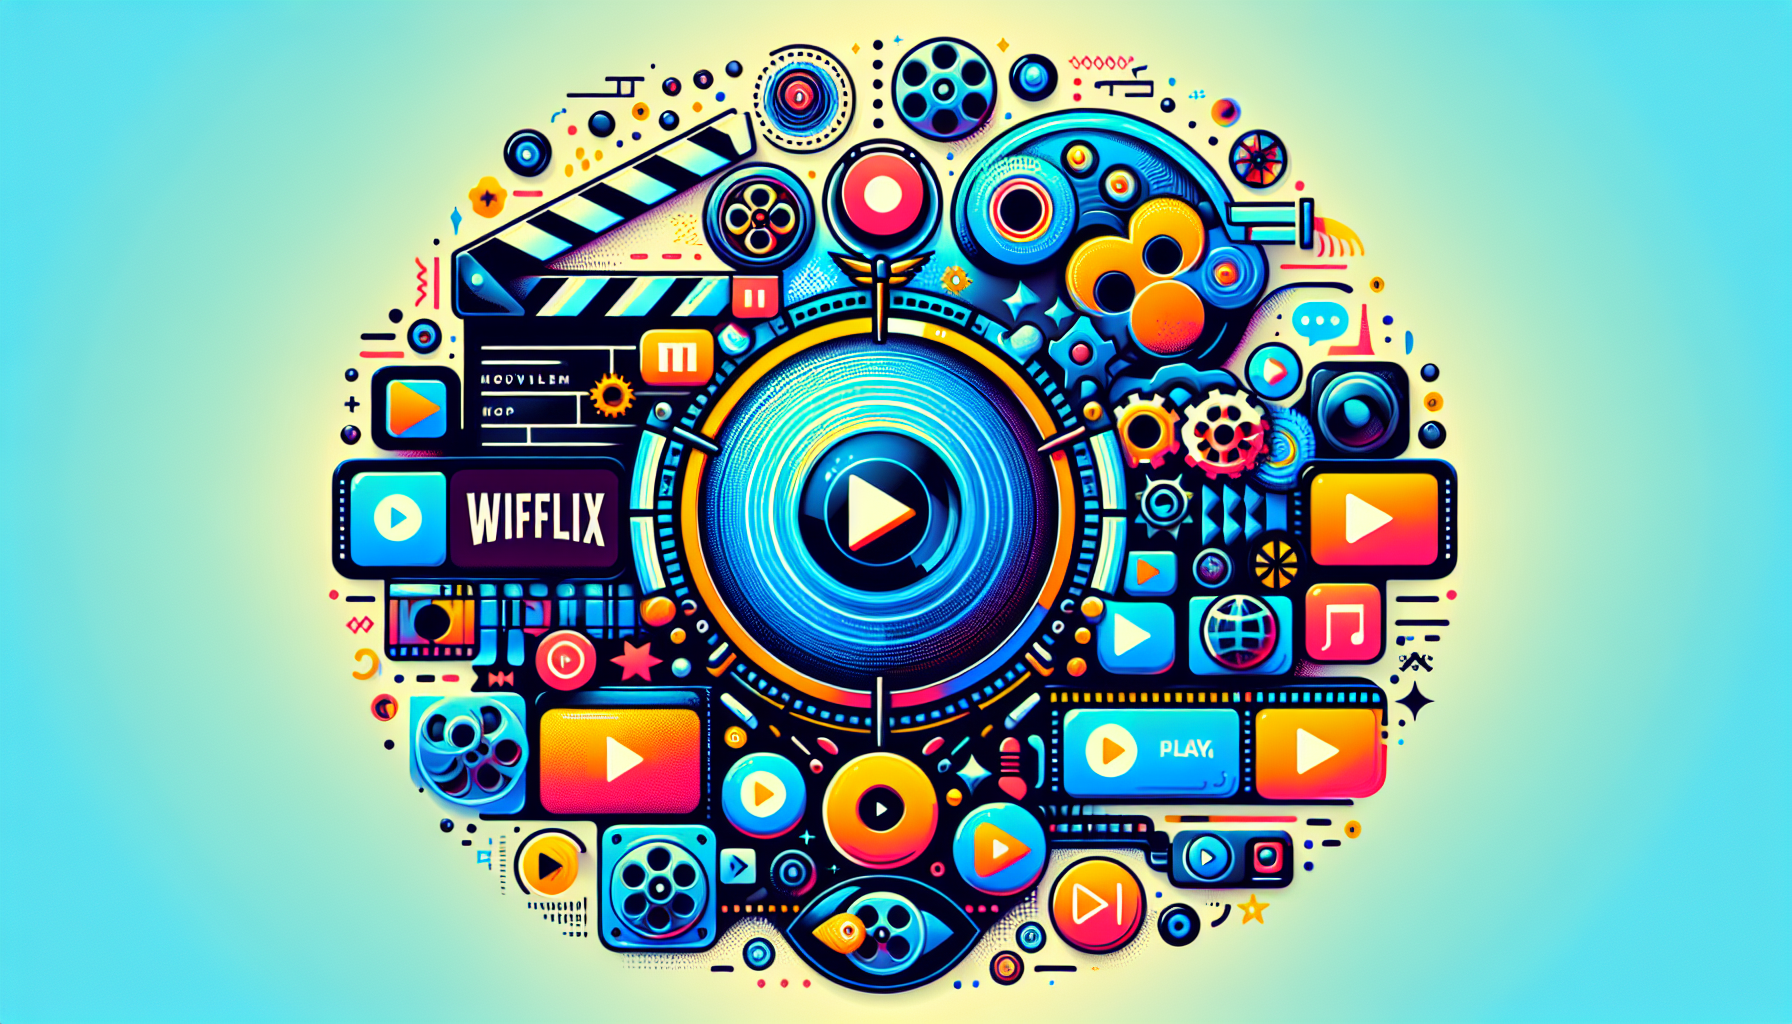 découvrez wiflix, la nouvelle plateforme de streaming révolutionnant l'expérience cinématographique avec une sélection de films inédits et des fonctionnalités innovantes.